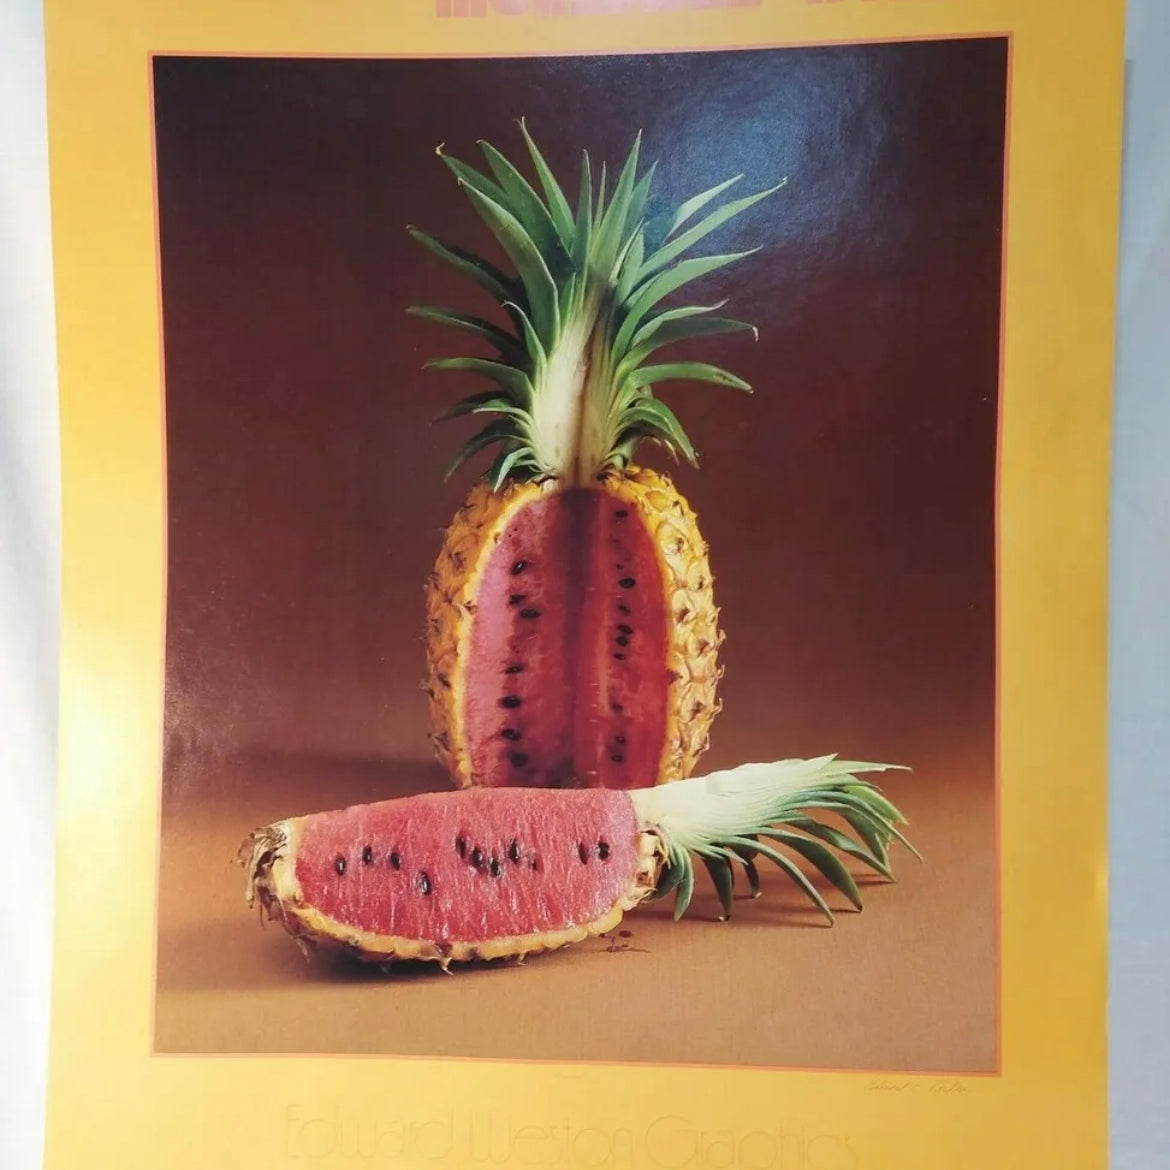 incredible edibles pine melon print